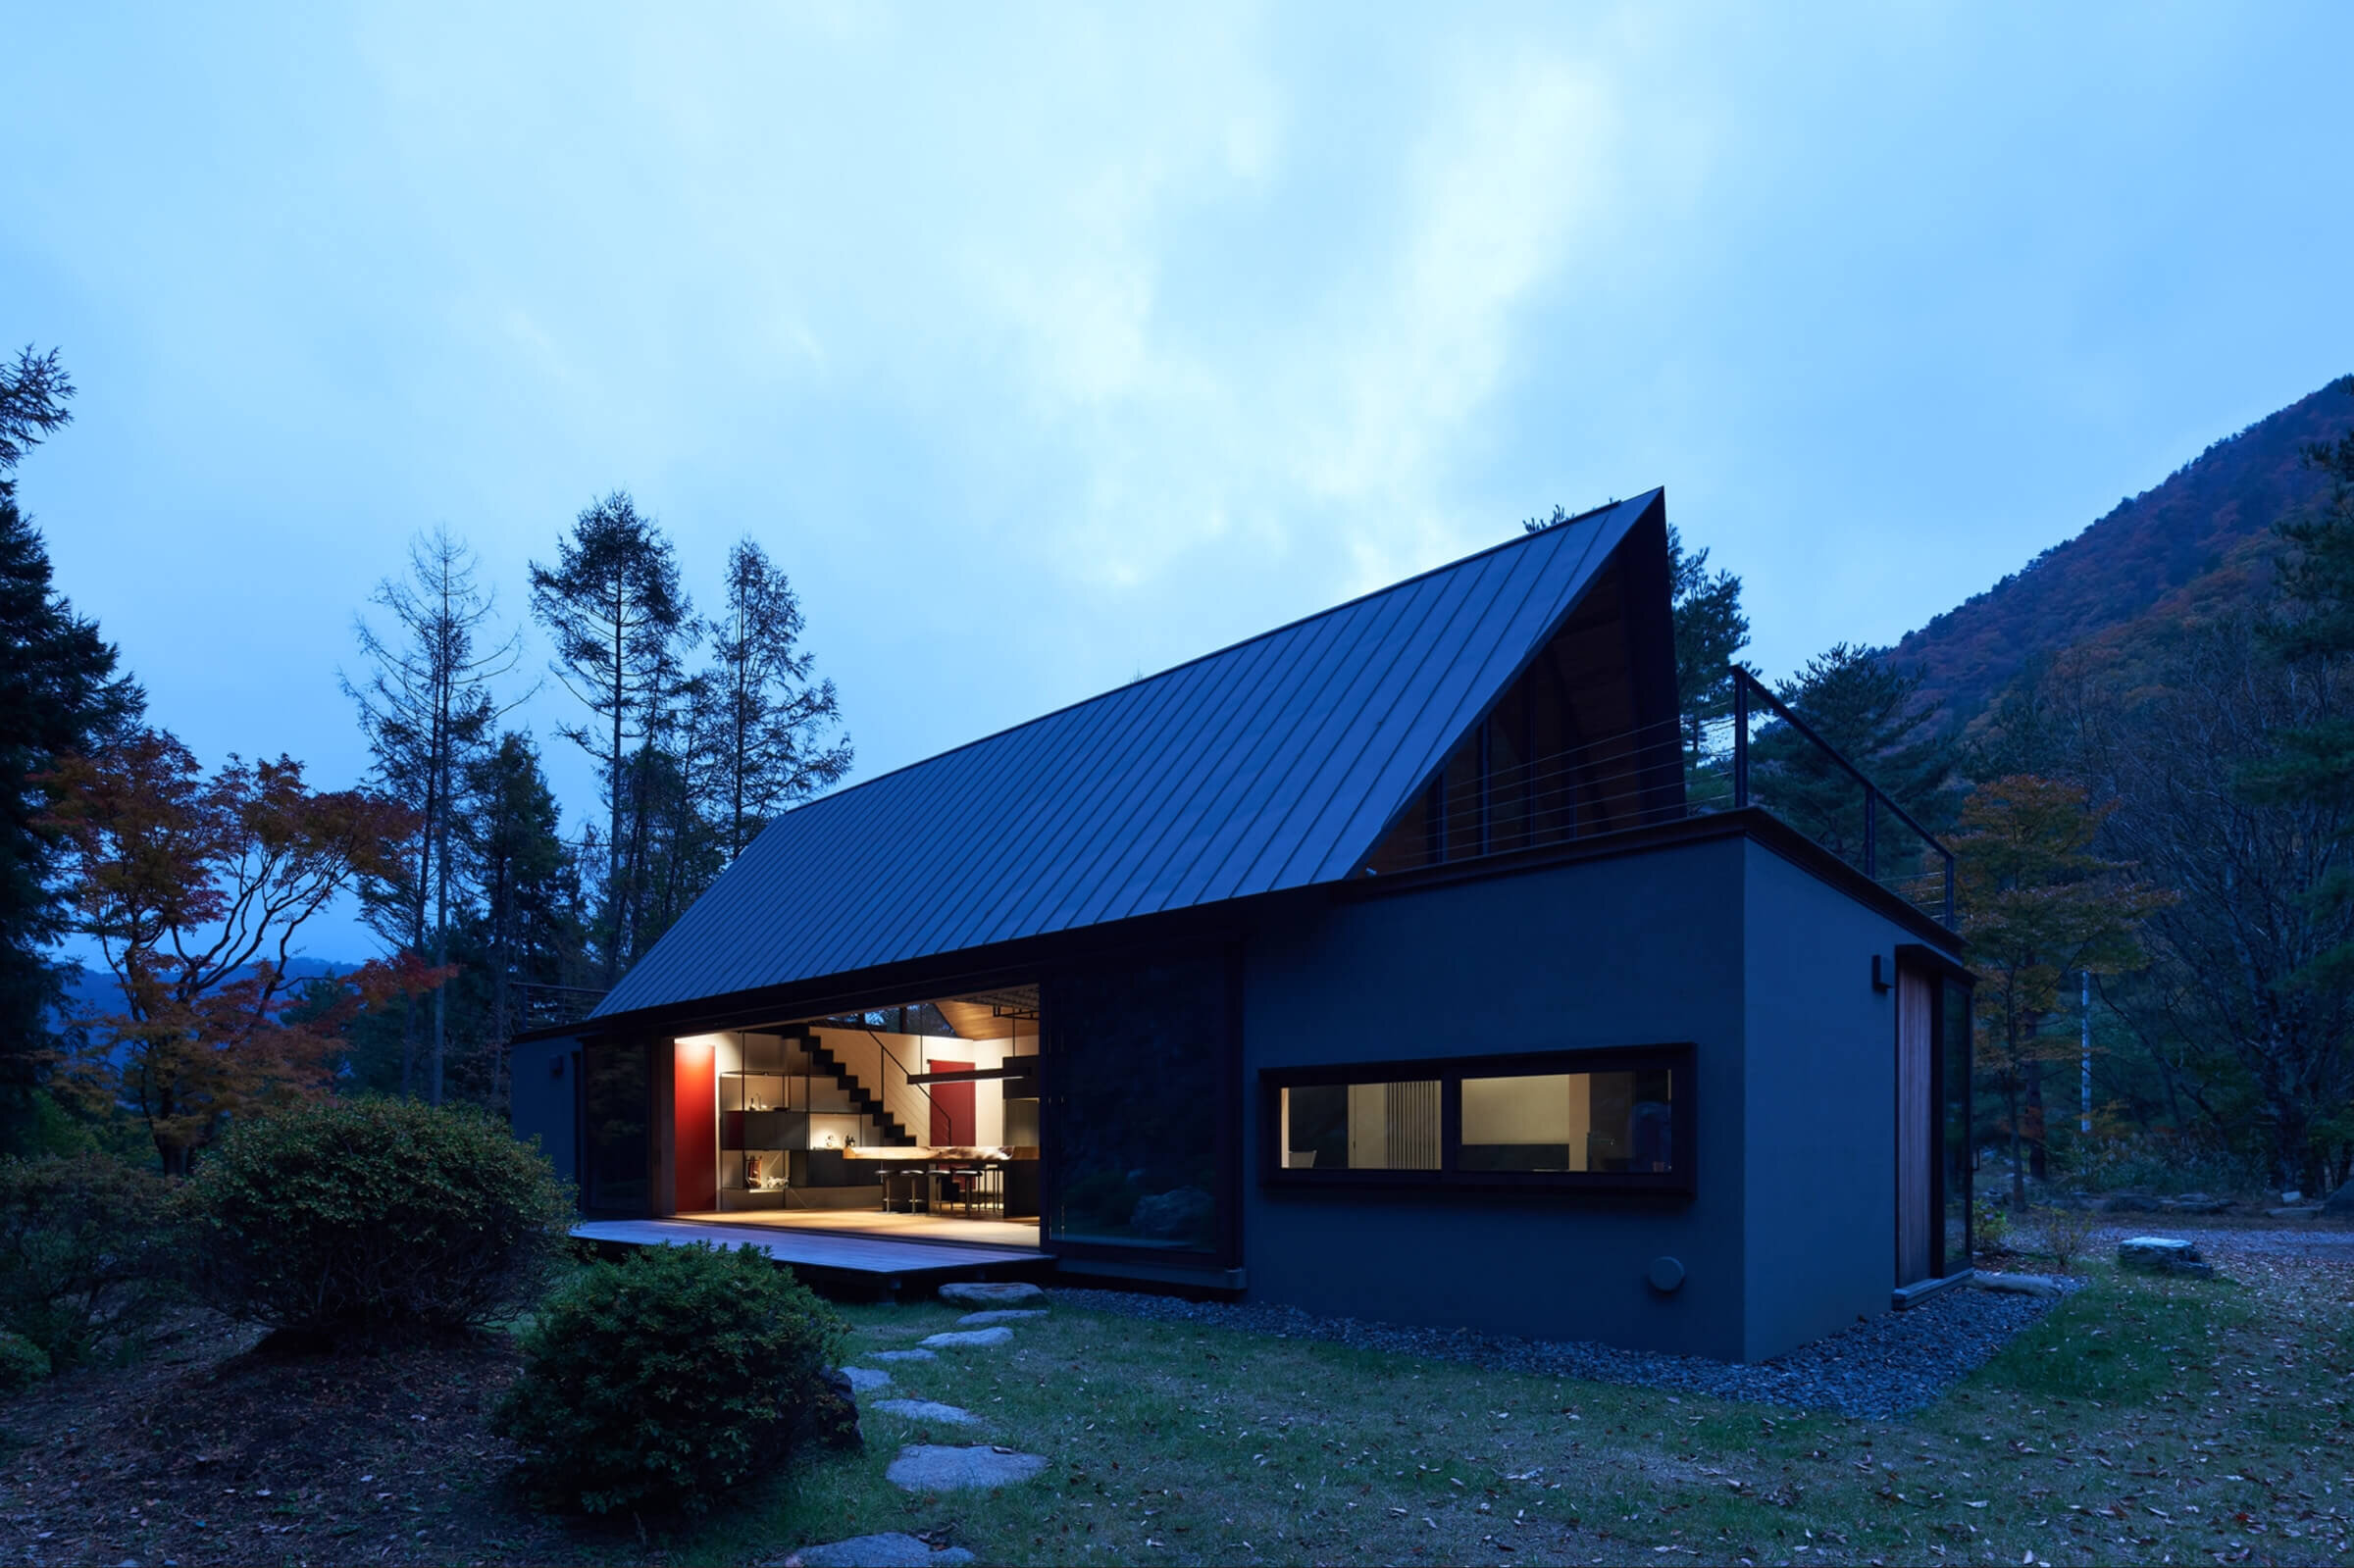 keiji-ashizawa-design-house-in-saiko-yamanashi-japan-idreit-539.jpg